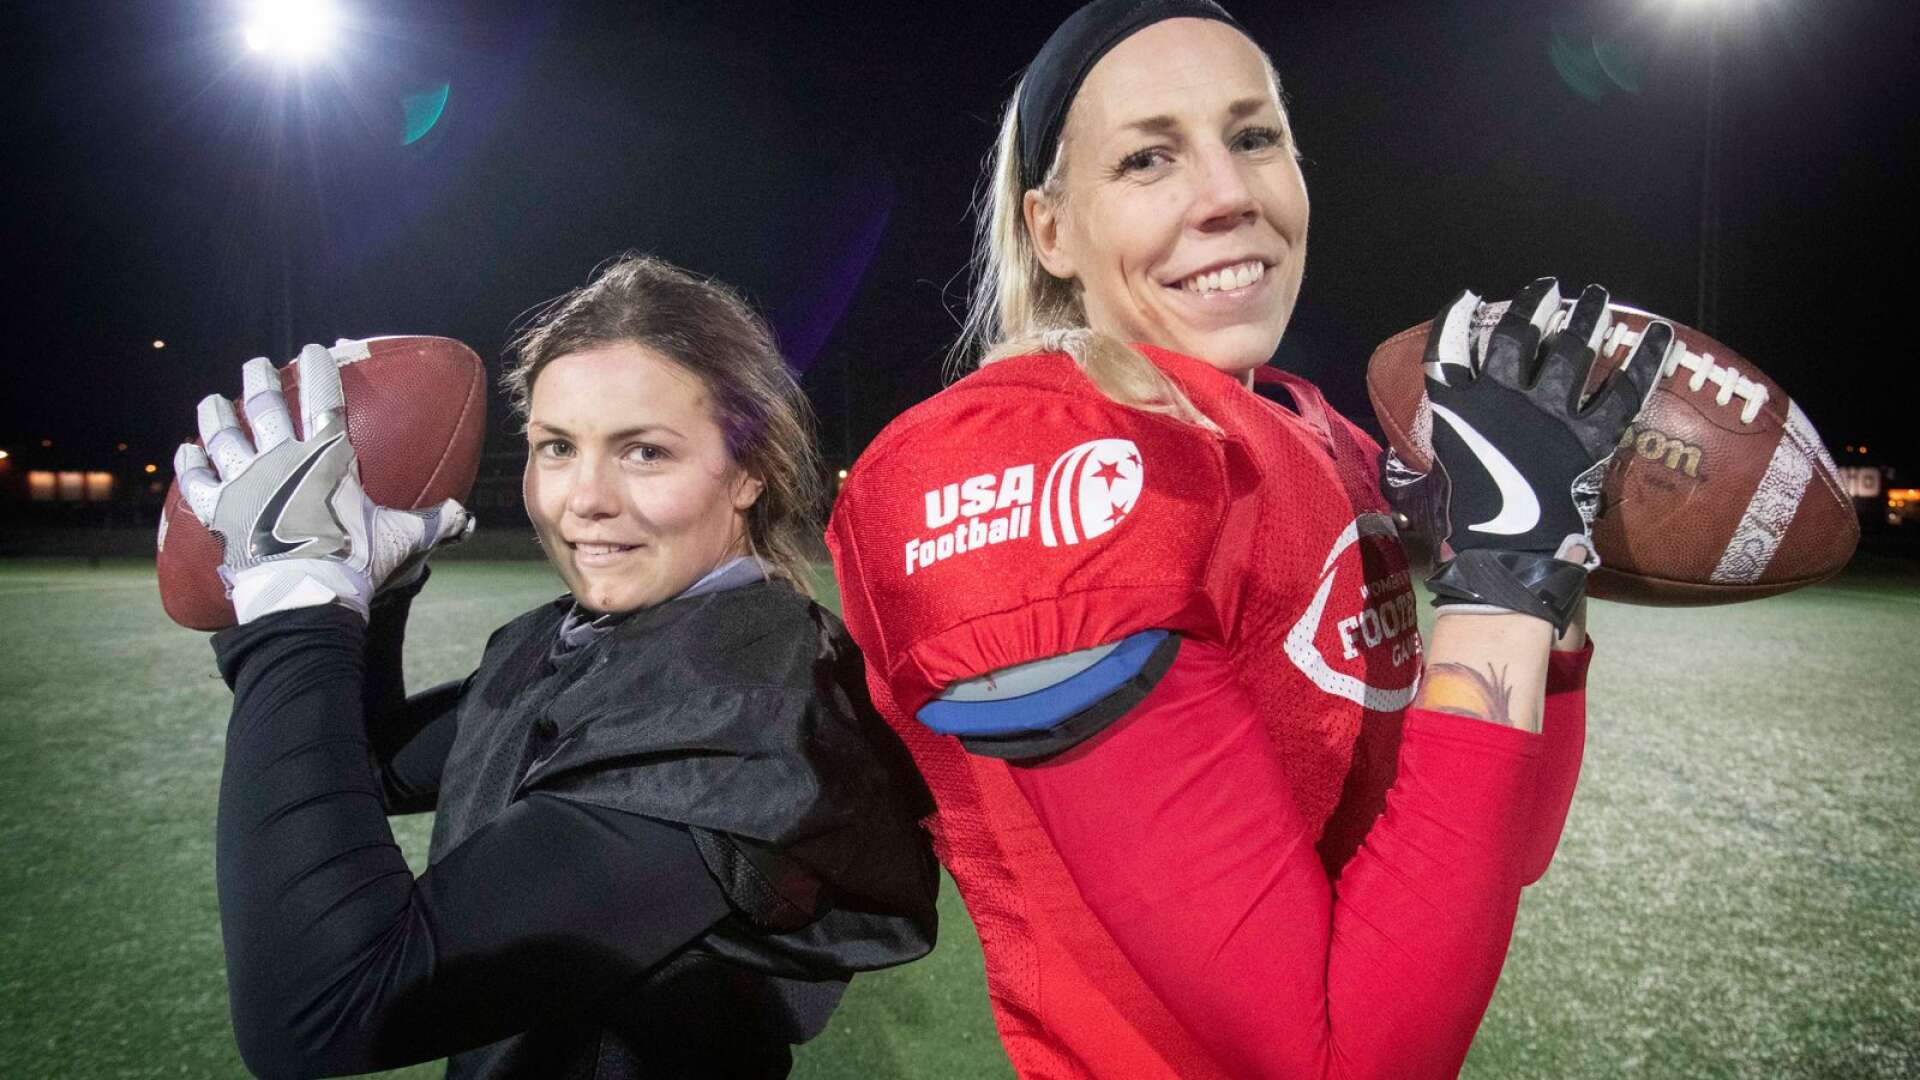 Karin Ullén och Linda Johansson spelade tidigare handboll ihop i Hellton. Nu är de återförenade i sin nya sport amerikansk fotboll i Carlstad Crusaders.